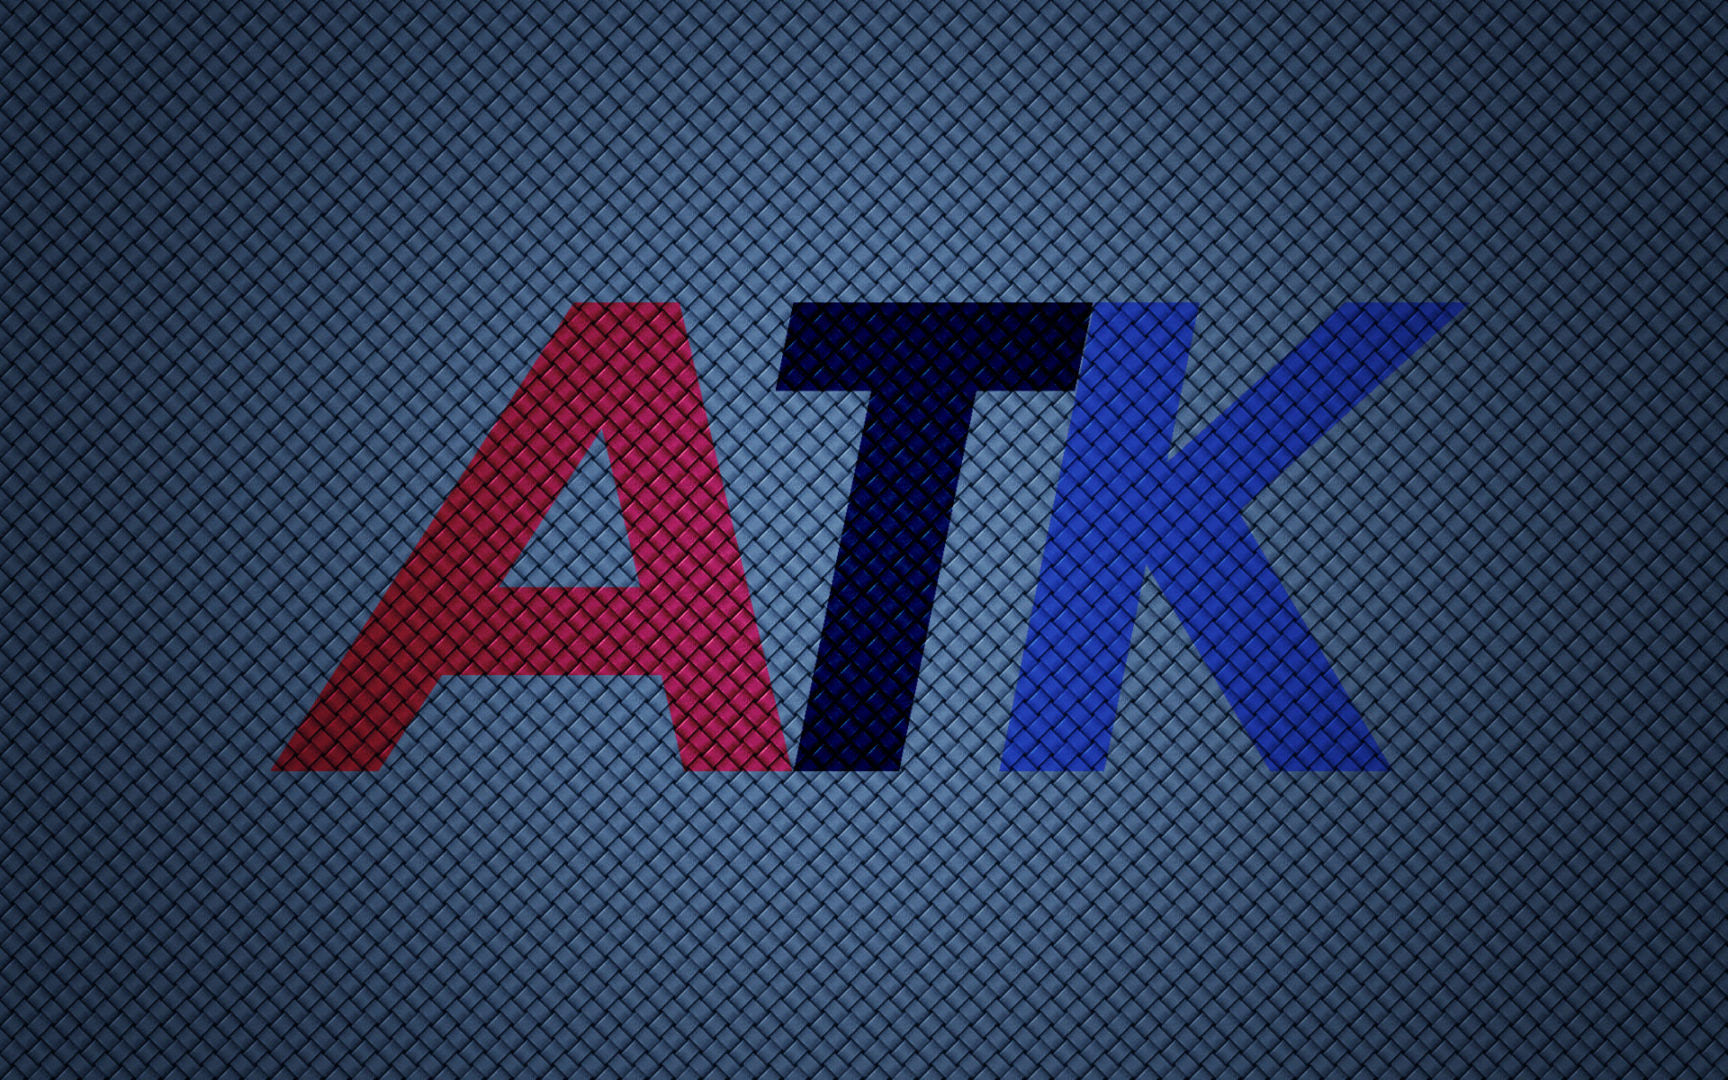 ATK emblem